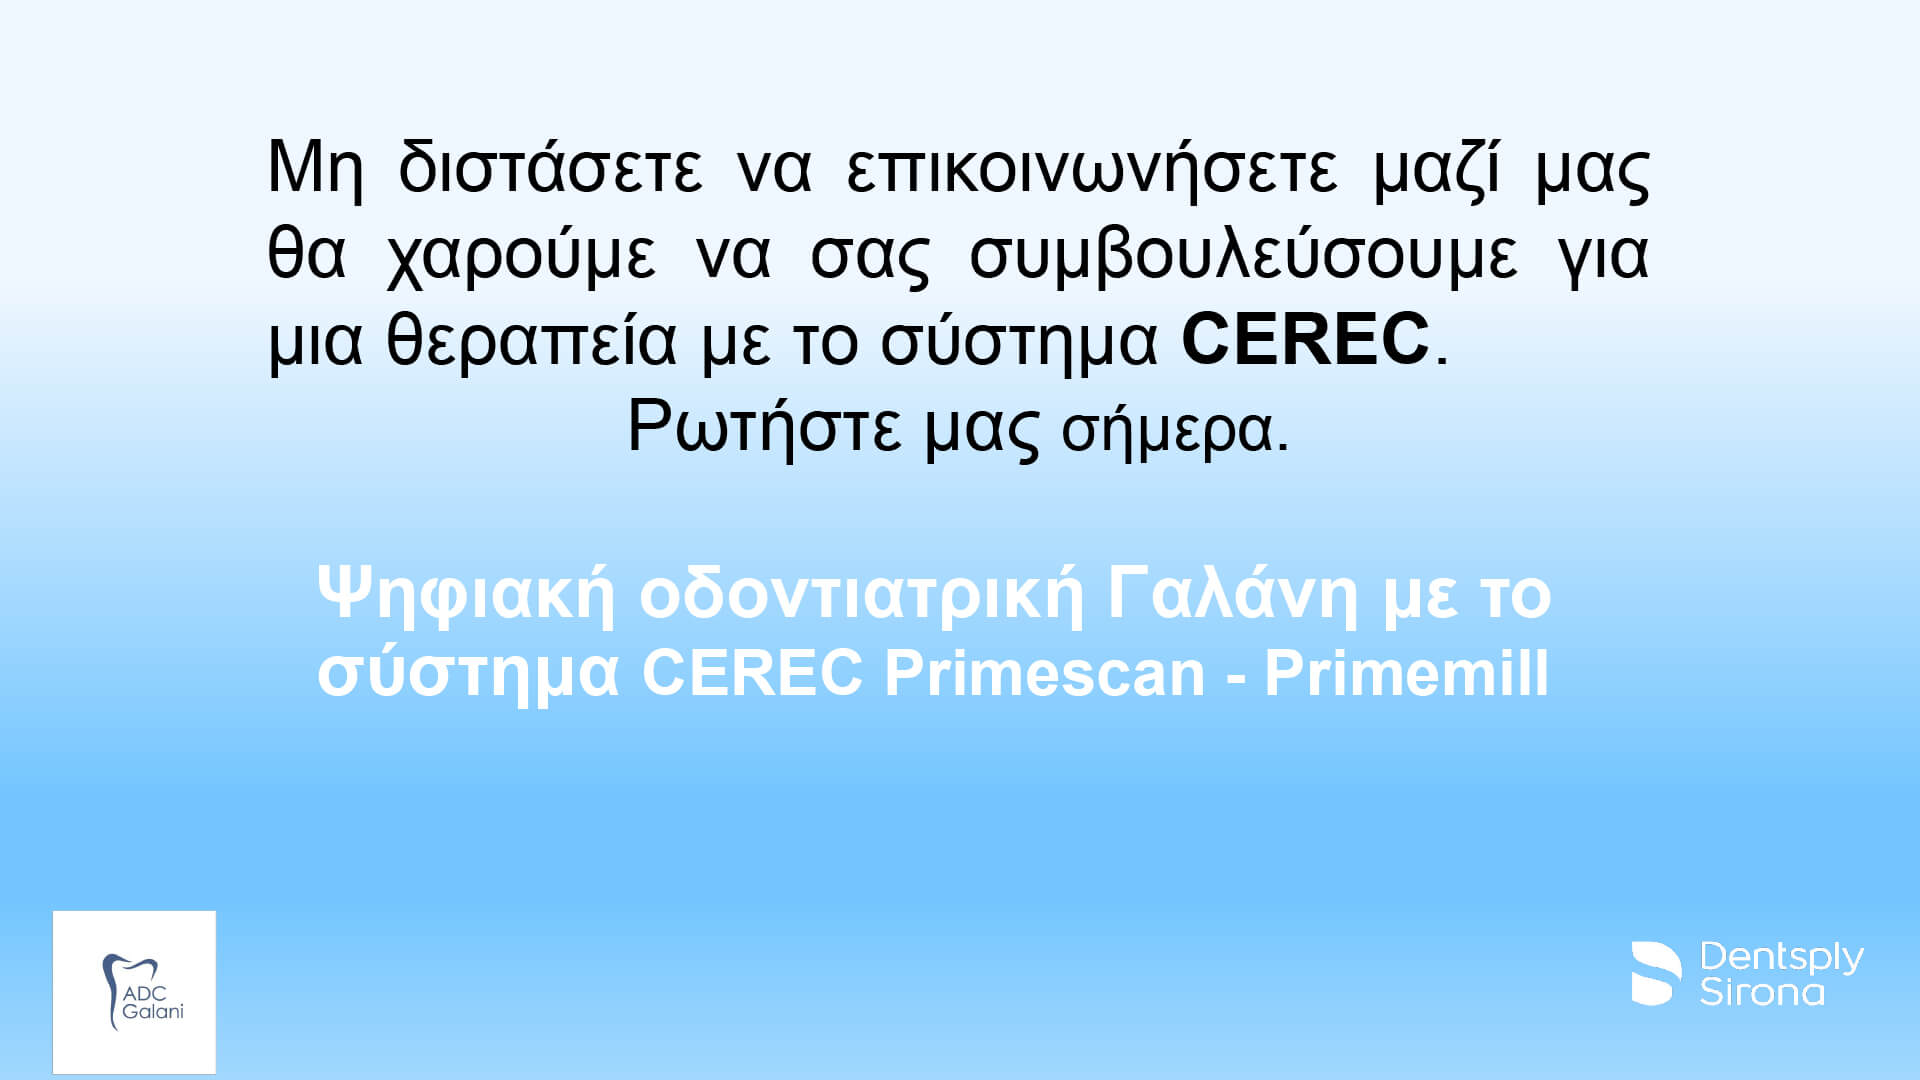 CEREC-presentation-patient-communication-hygiene-PPT-16-9-EN.pptx-9